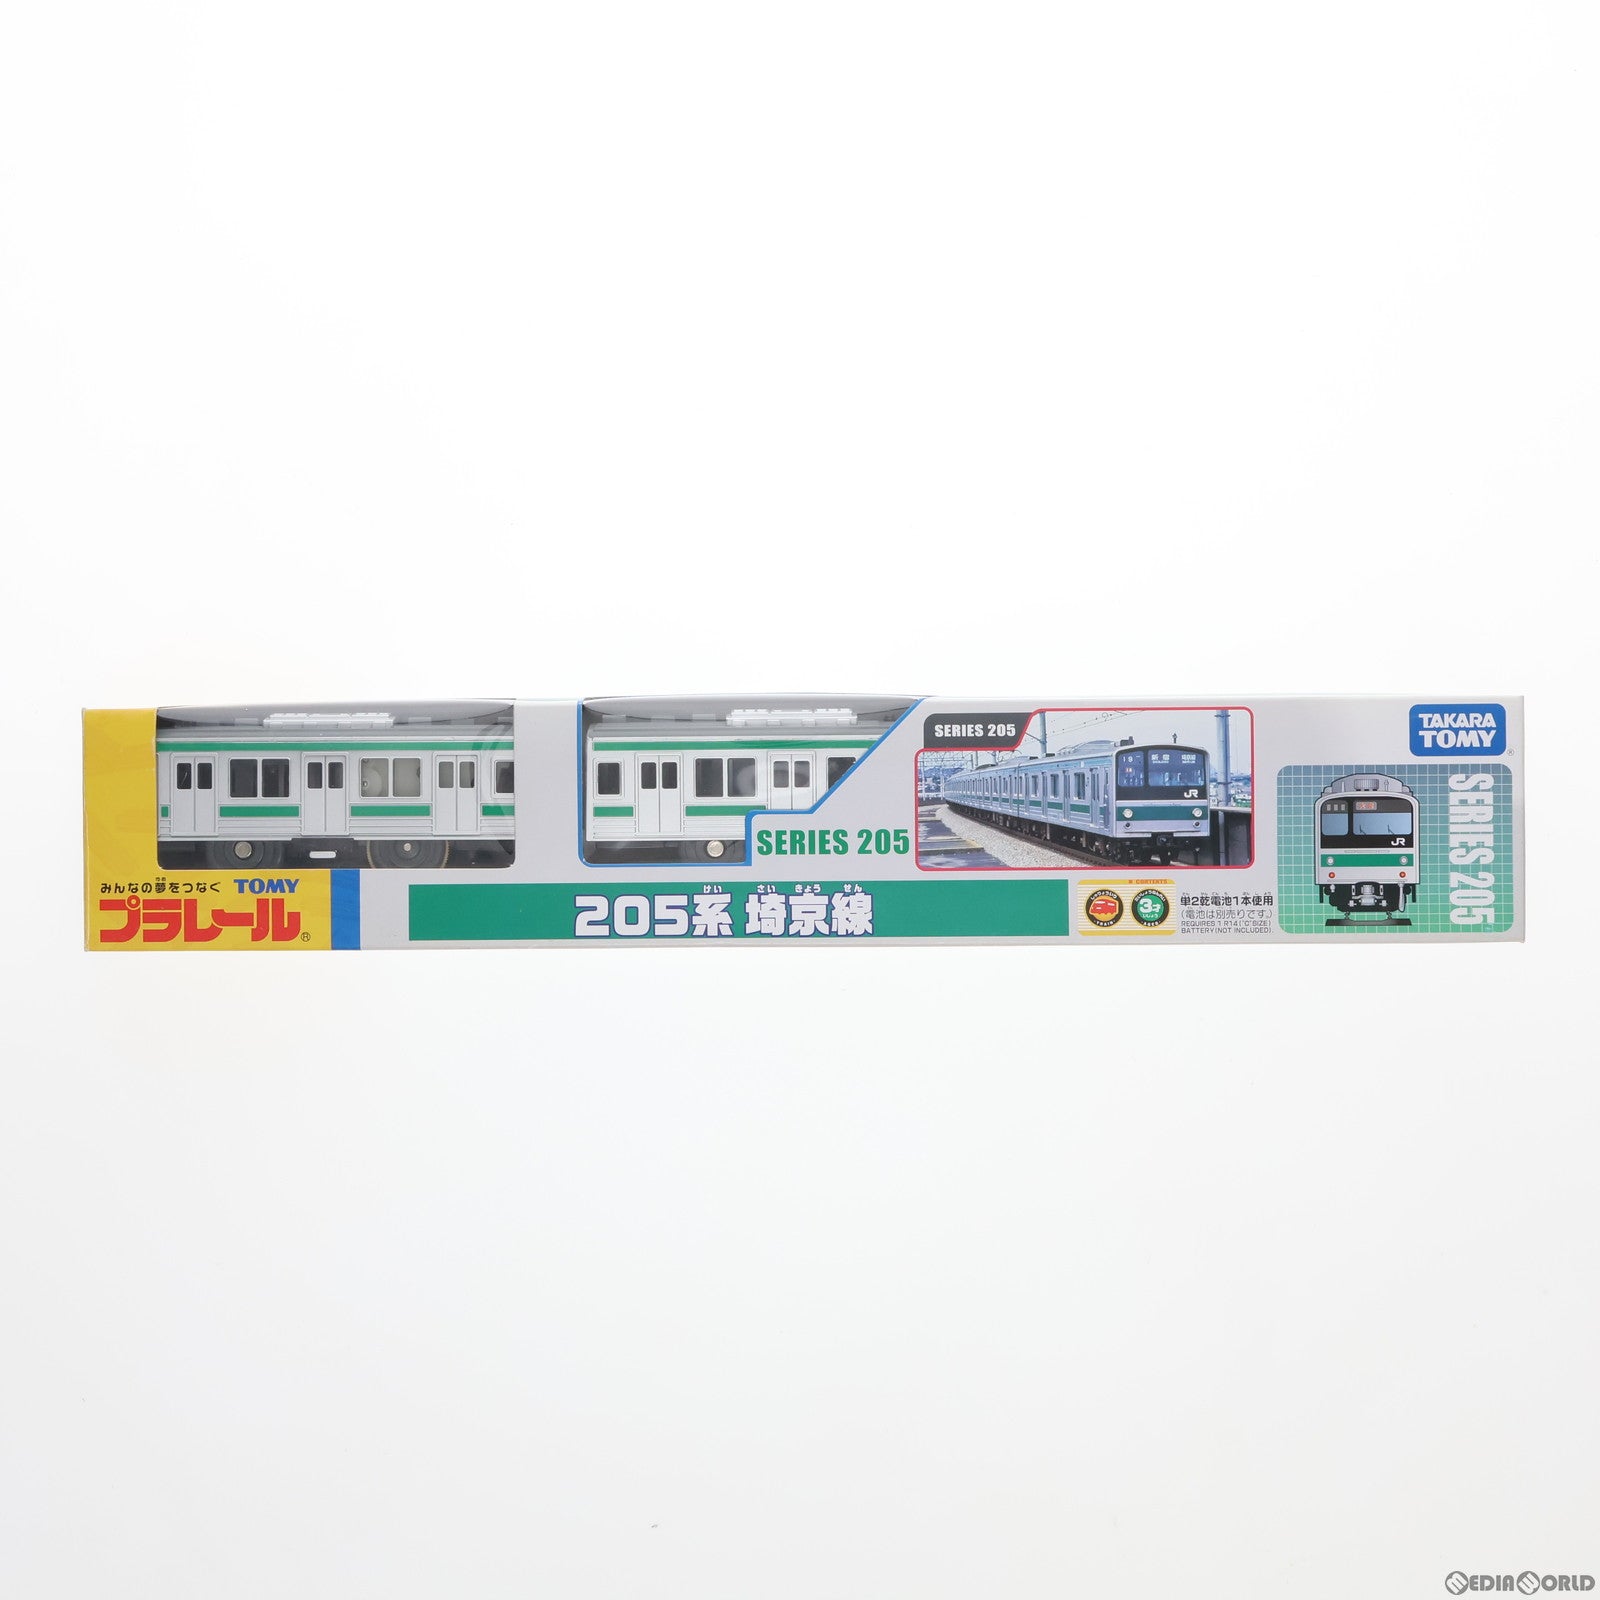 【中古即納】[RWM]鉄道博物館限定 プラレール 205系埼京線 3両セット(動力付き) 鉄道模型(20071014)